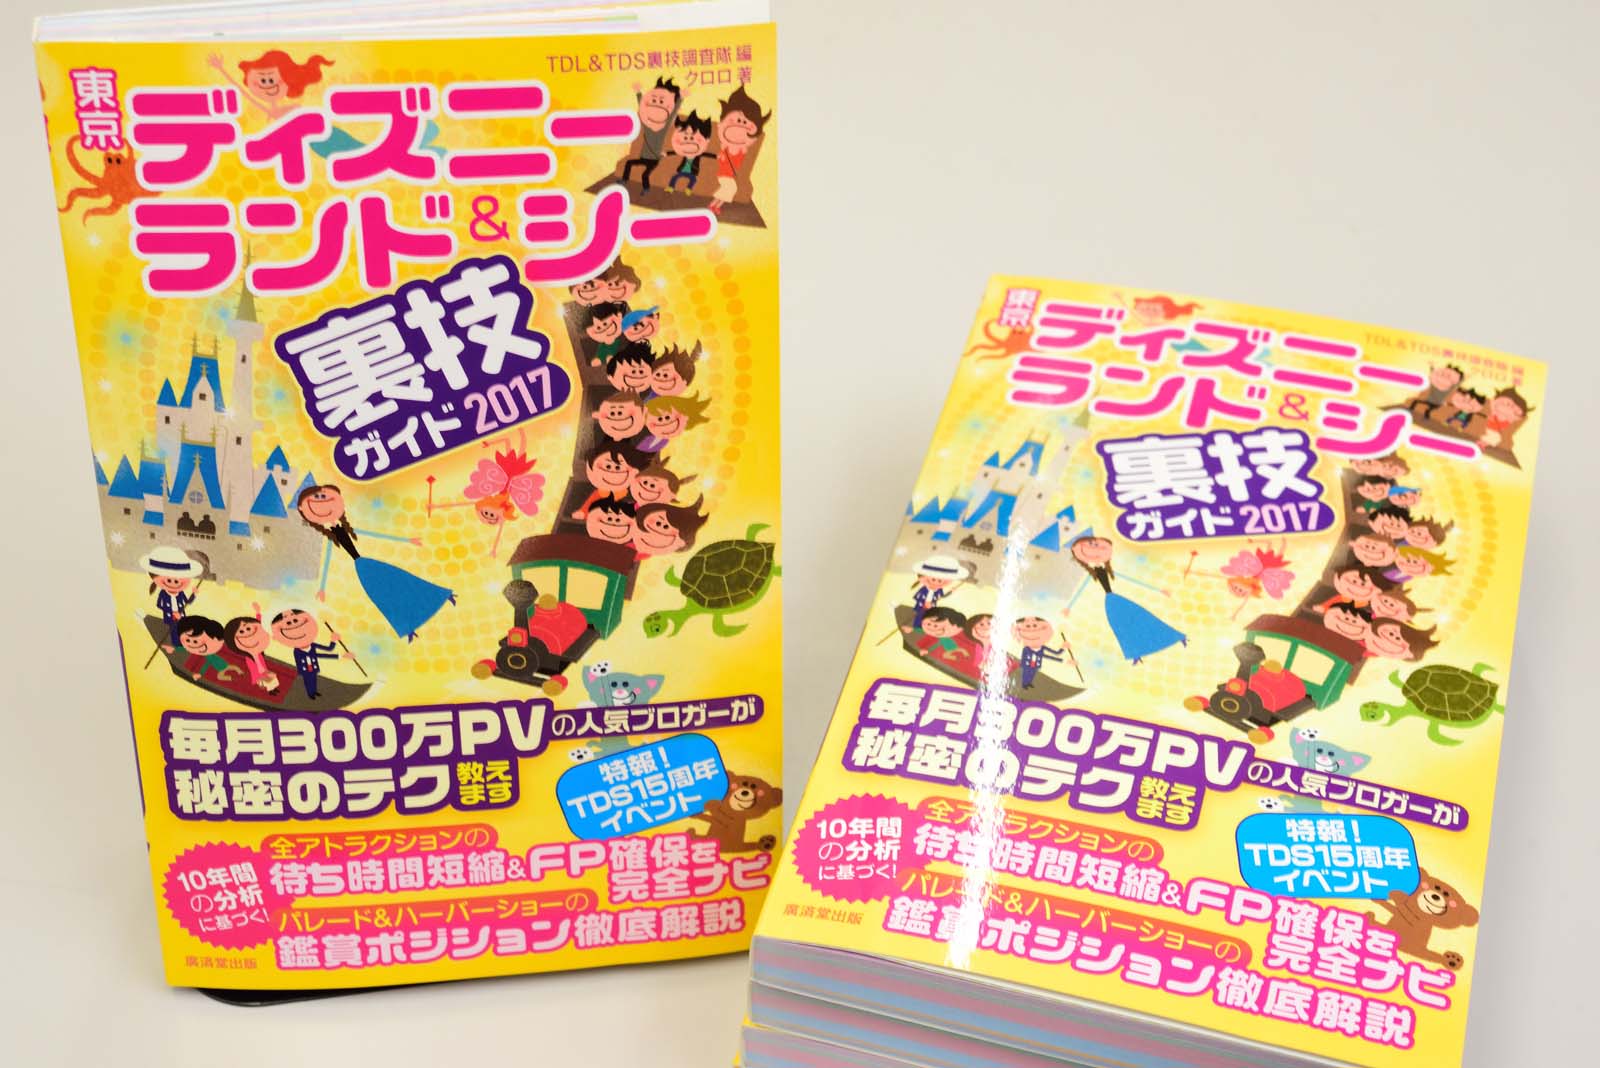 Tdrガイド本を執筆しました 東京ディズニーランド シー裏技ガイド 17 が11月25日発売 Disney Colors Blog